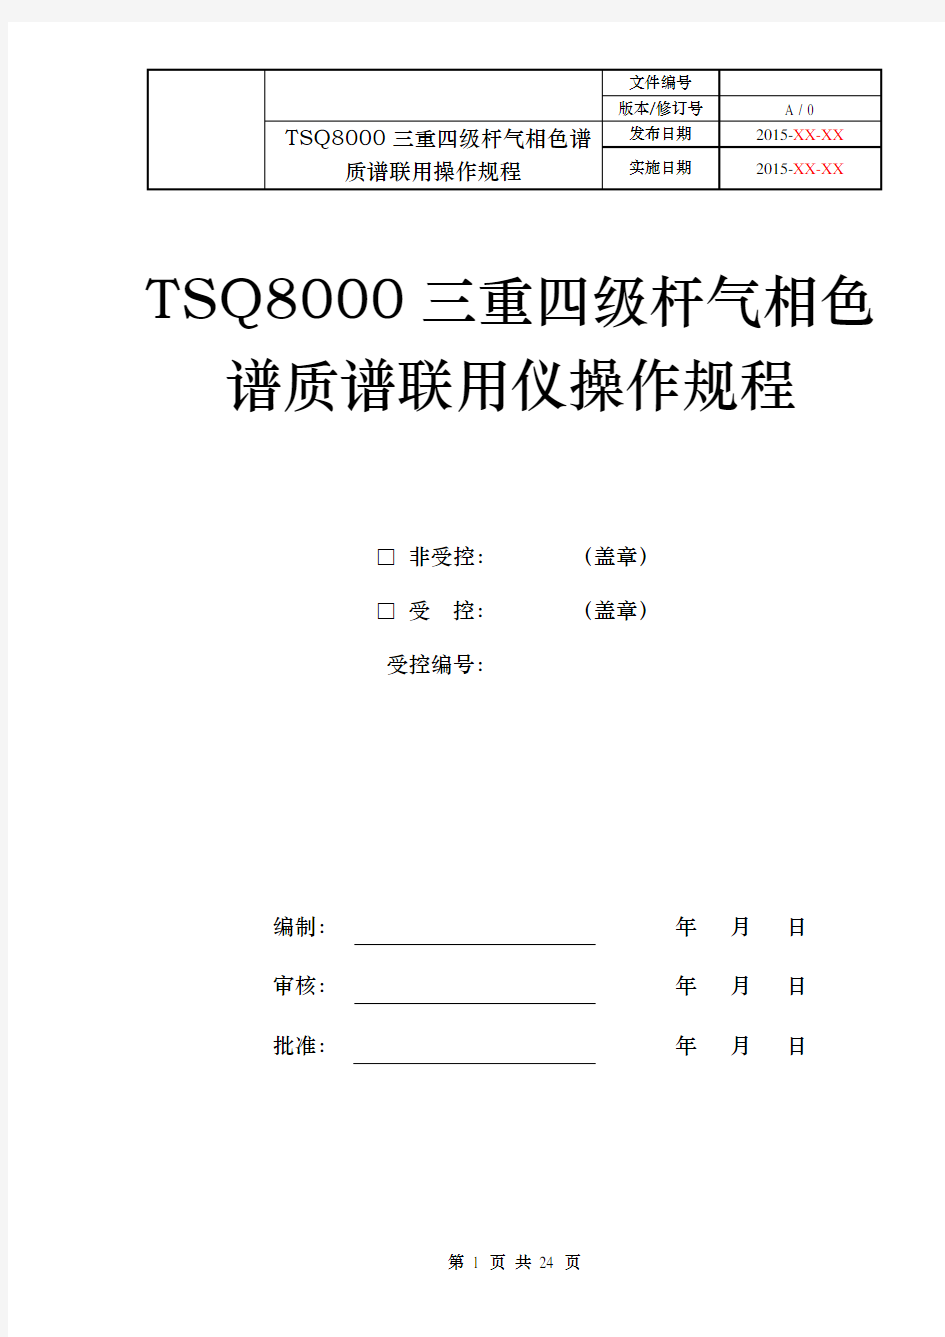 (完整版)TSQ8000三重四级杆气质联用仪操作作业指导书